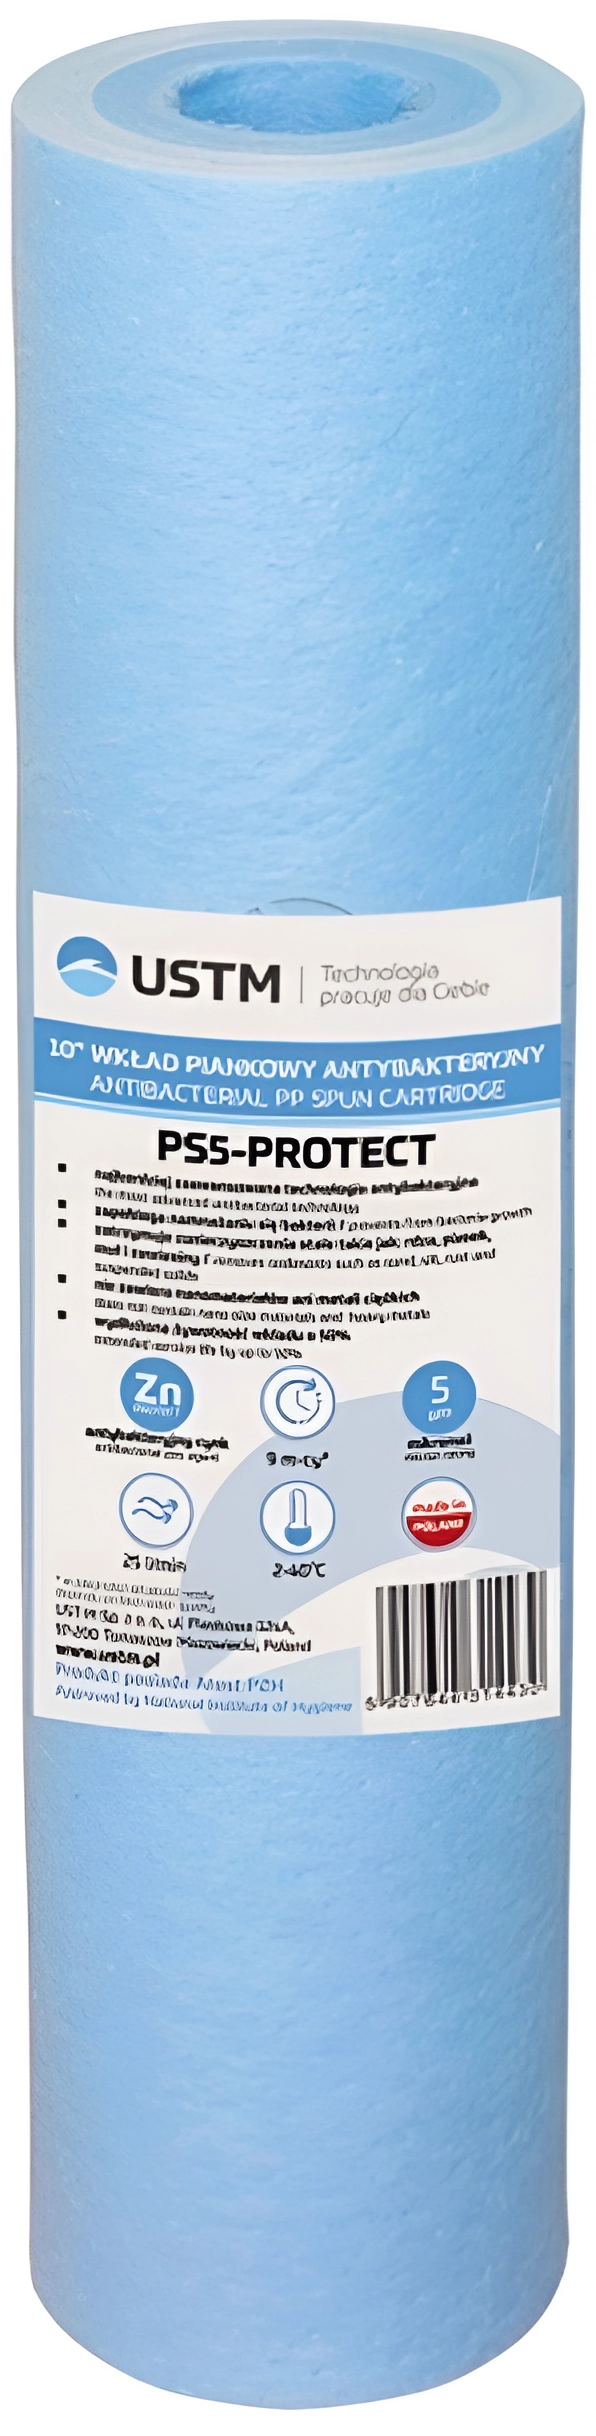 Инструкция картридж для фильтра USTM PS-5-Protect 10"